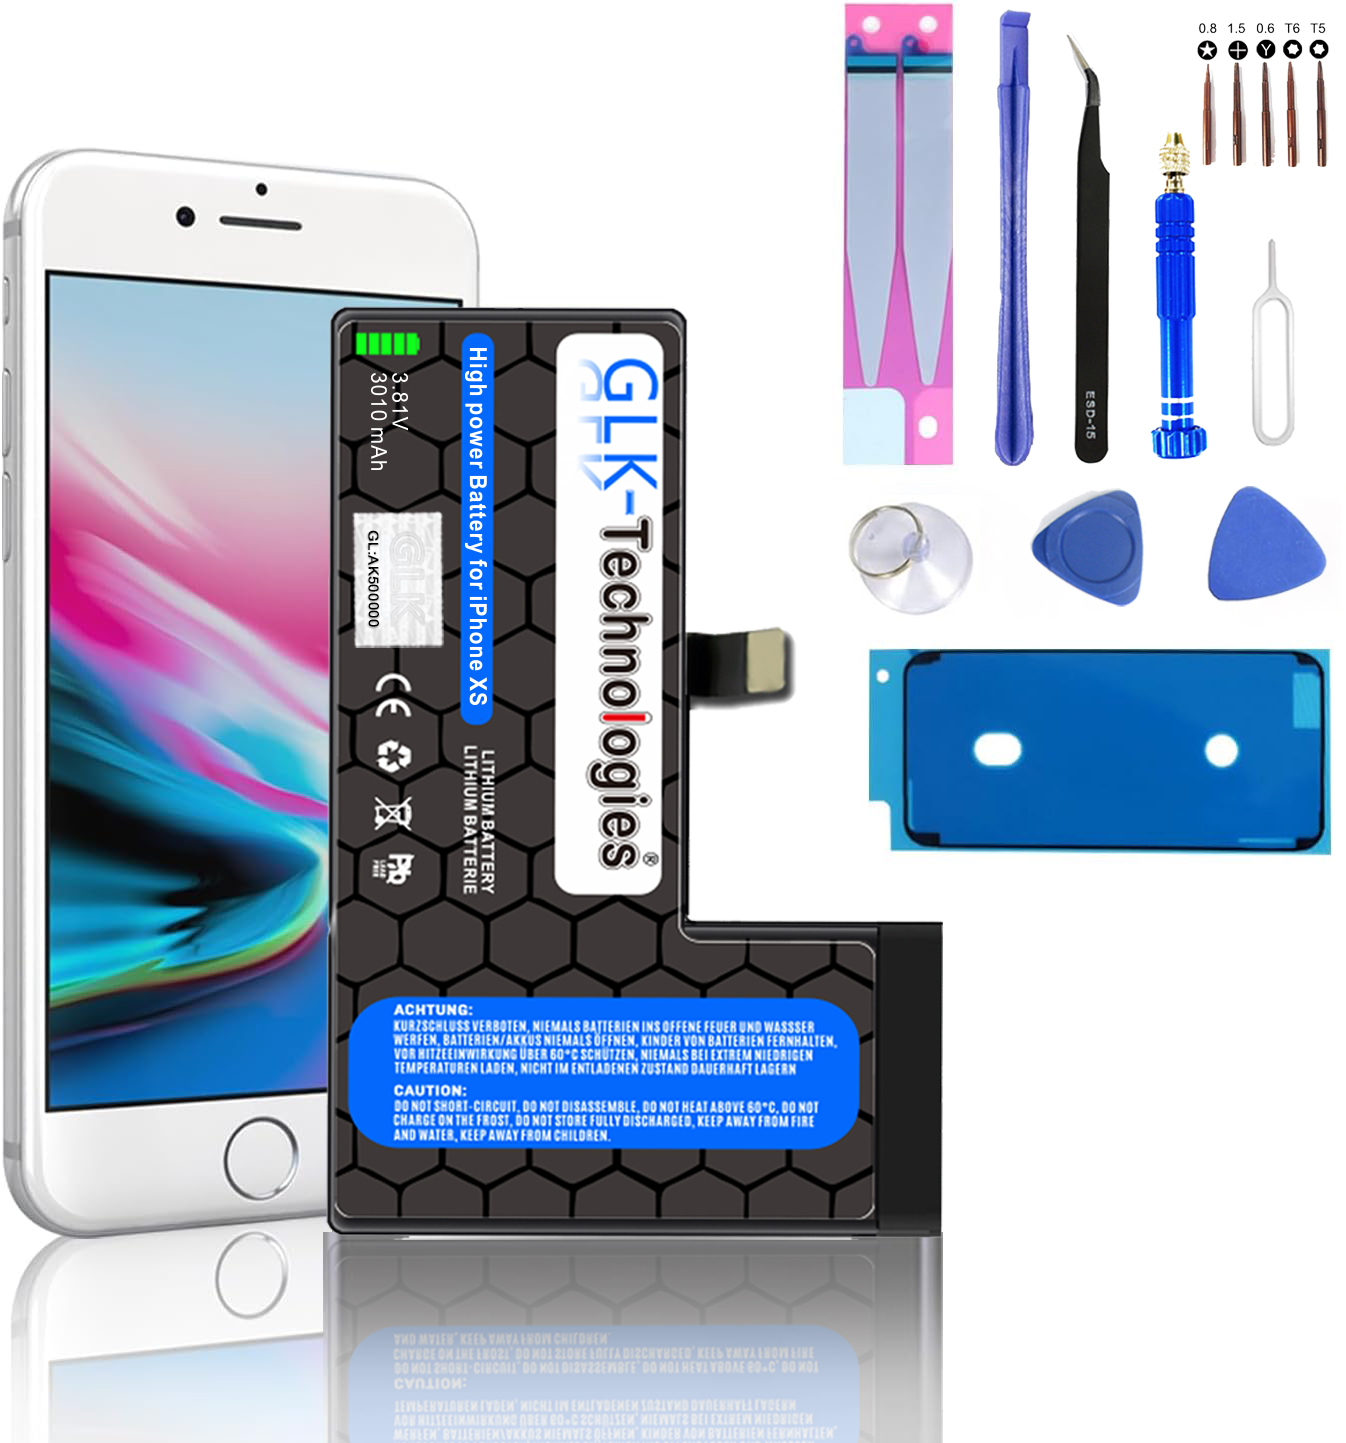 GLK-TECHNOLOGIES Apple iPhone XS Lithium-Ionen-Akku Werkzeug Ersatz PROFI mAh Smartphone Akku, inkl. 2740